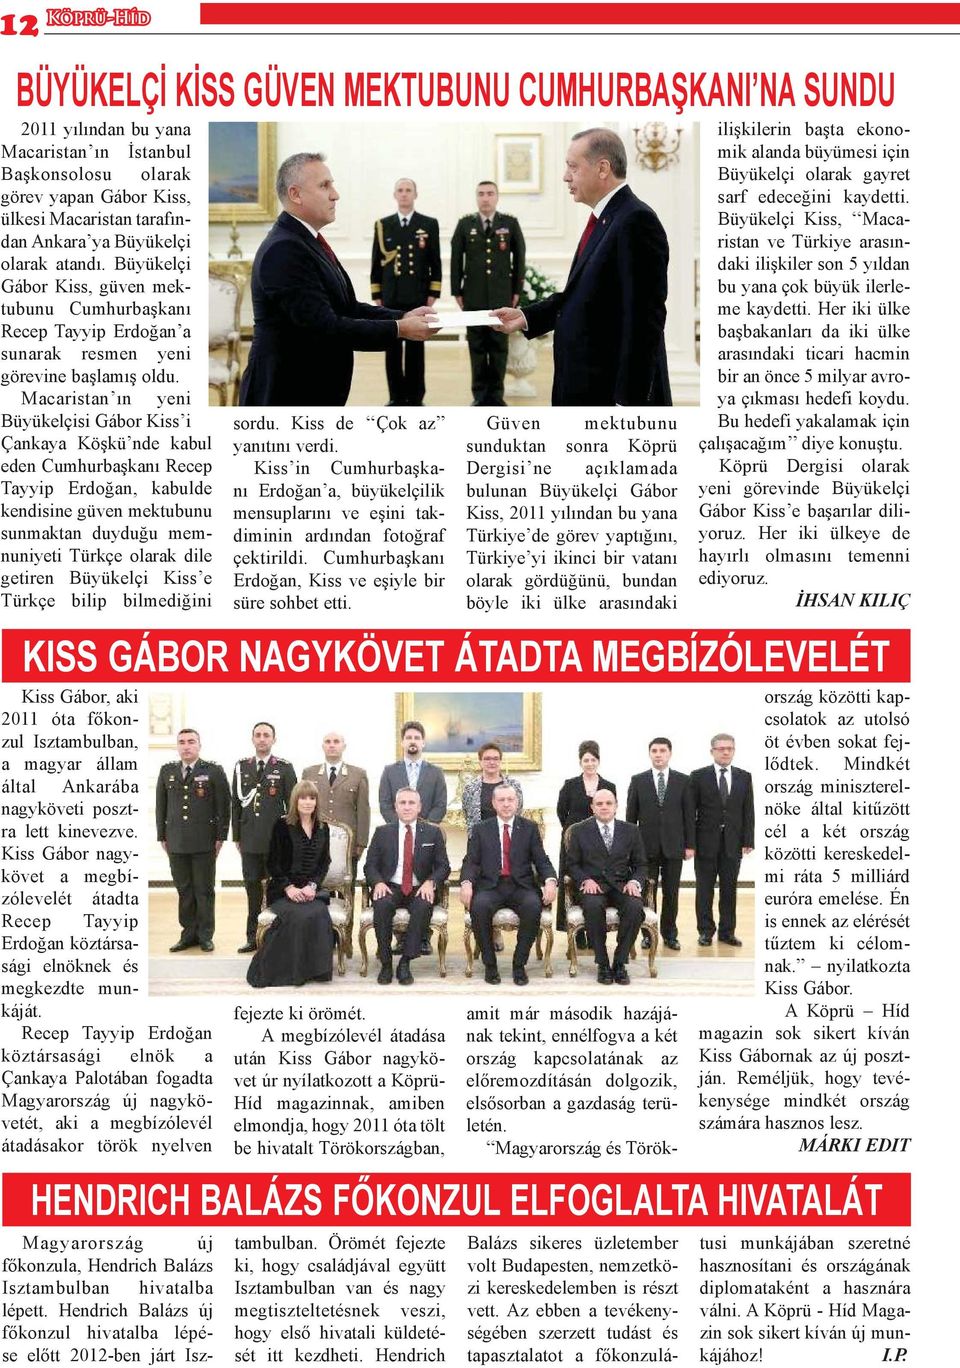 Macaristan ın yeni Büyükelçisi Gábor Kiss i Çankaya Köşkü nde kabul eden Cumhurbaşkanı Recep Tayyip Erdoğan, kabulde kendisine güven mektubunu sunmaktan duyduğu memnuniyeti Türkçe olarak dile getiren